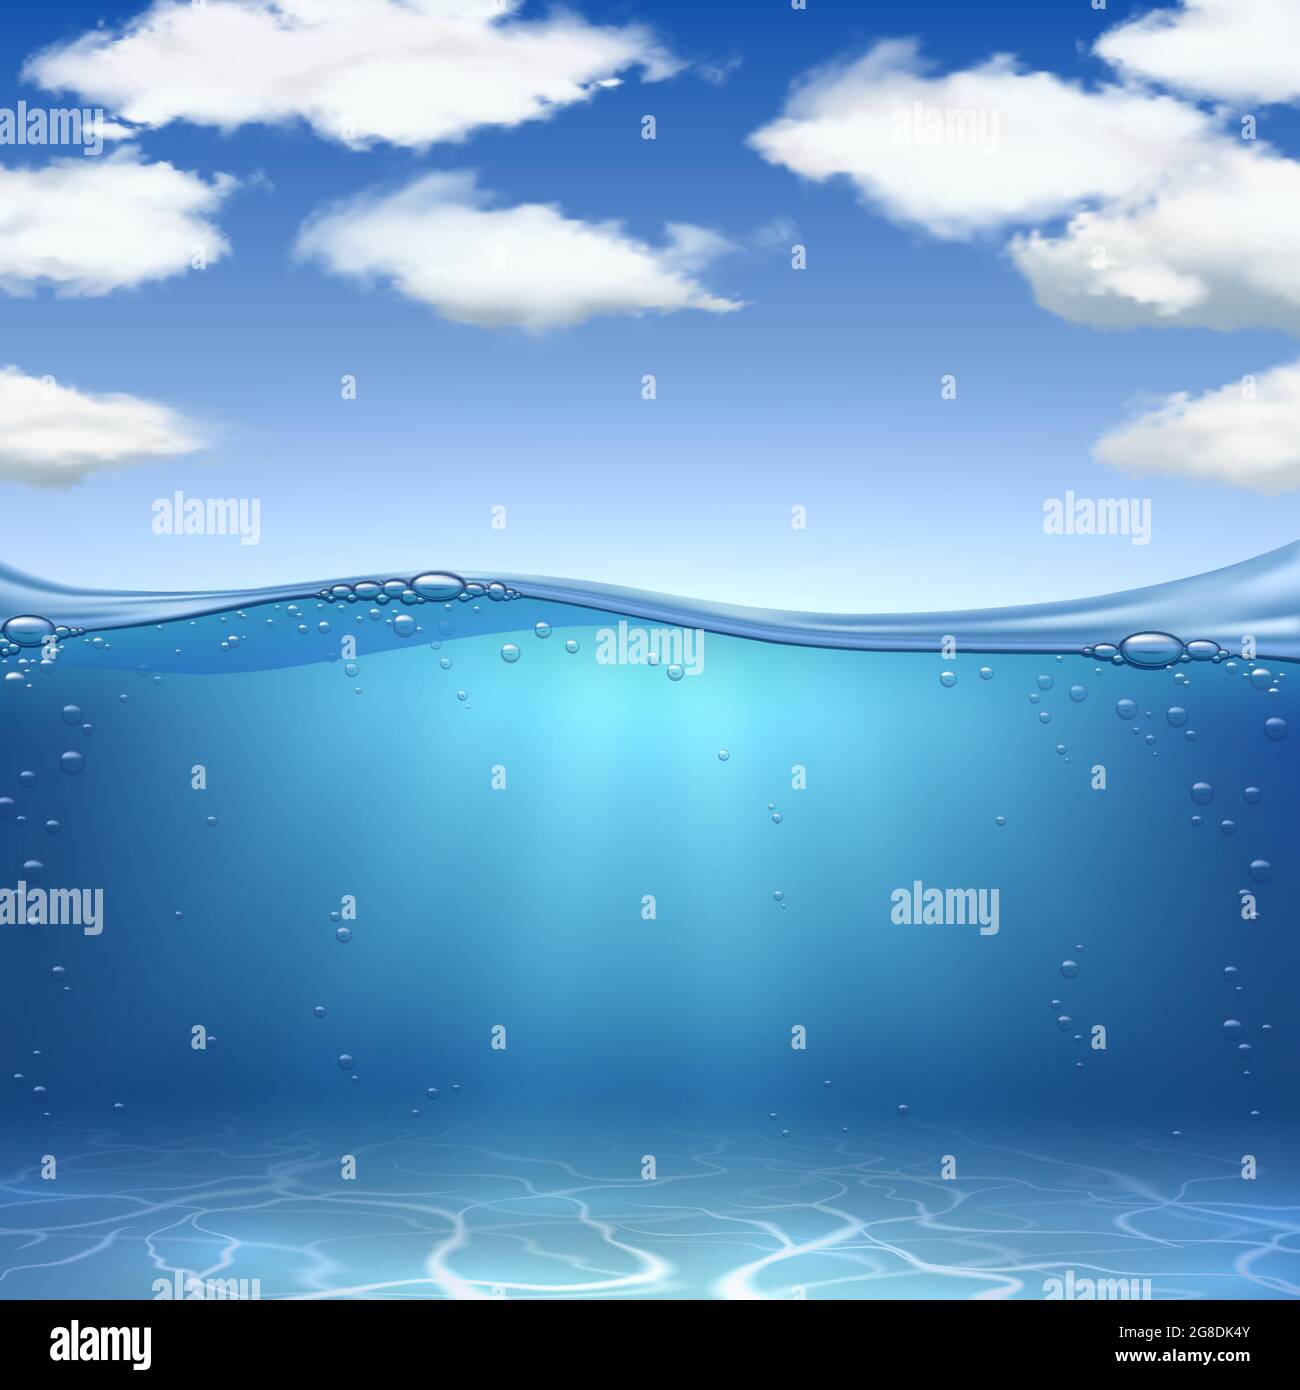 Meereswellen und Boden. Realistischer Ozeanunterwasser-Sand, Wasser mit Luftblasen und blauer Himmel mit Wolken. Meereslandschaft Vektorhintergrund Stock Vektor